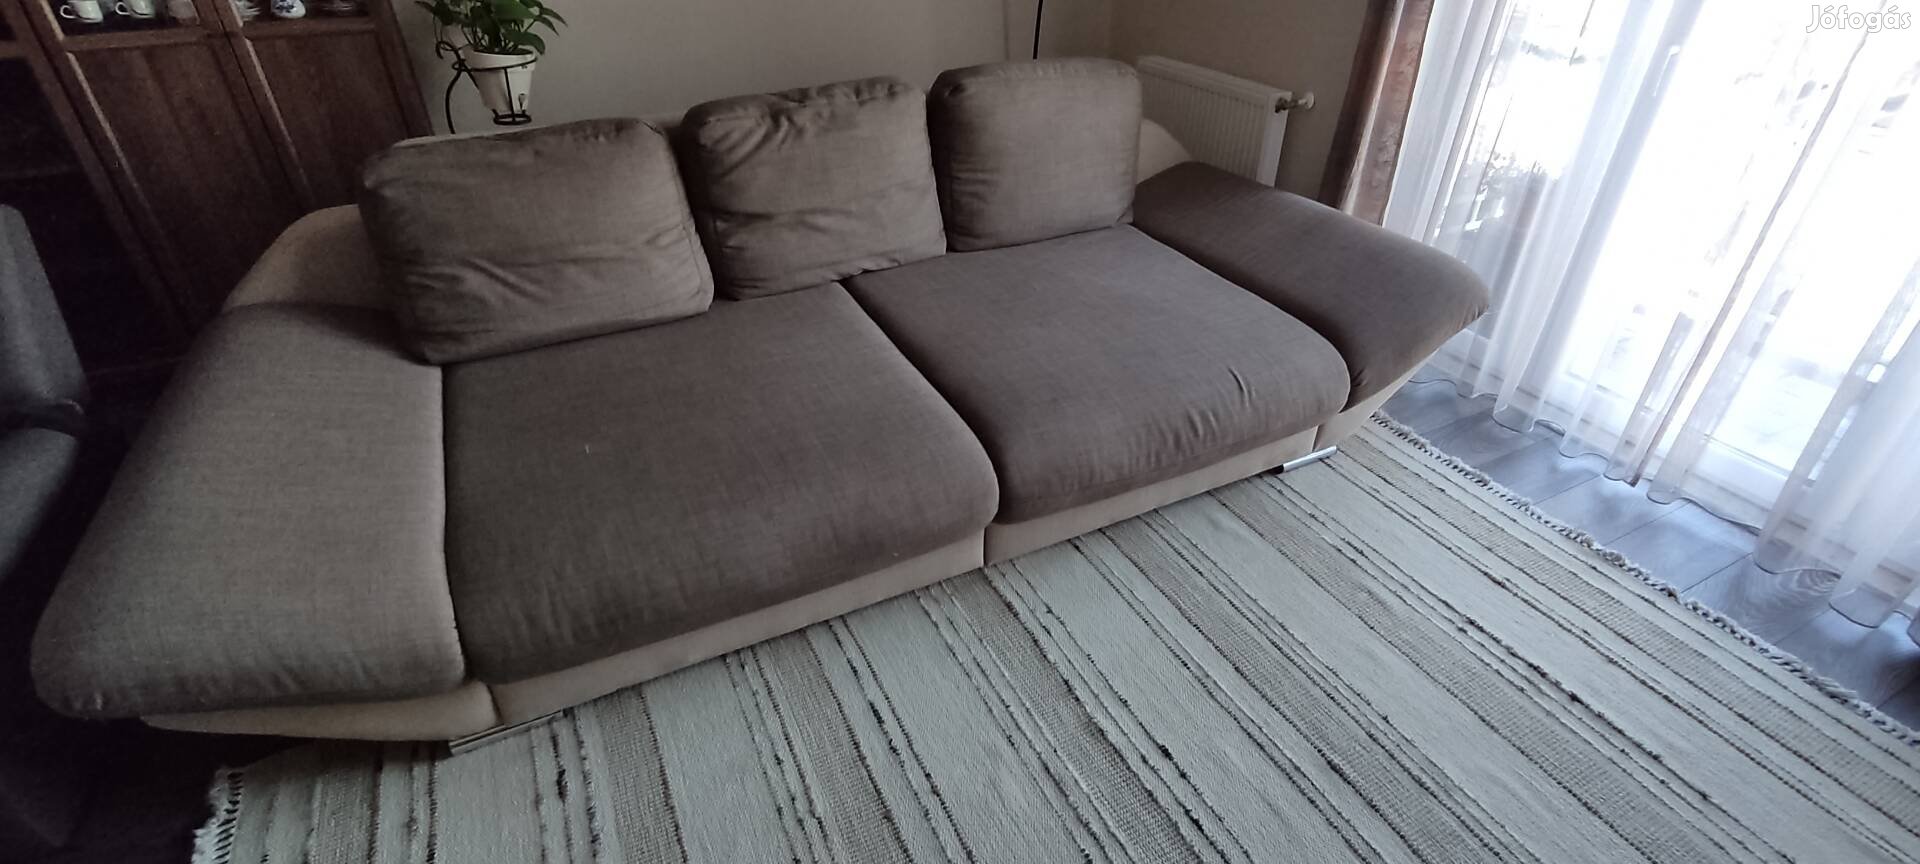 Használt nagyméretű kanapé